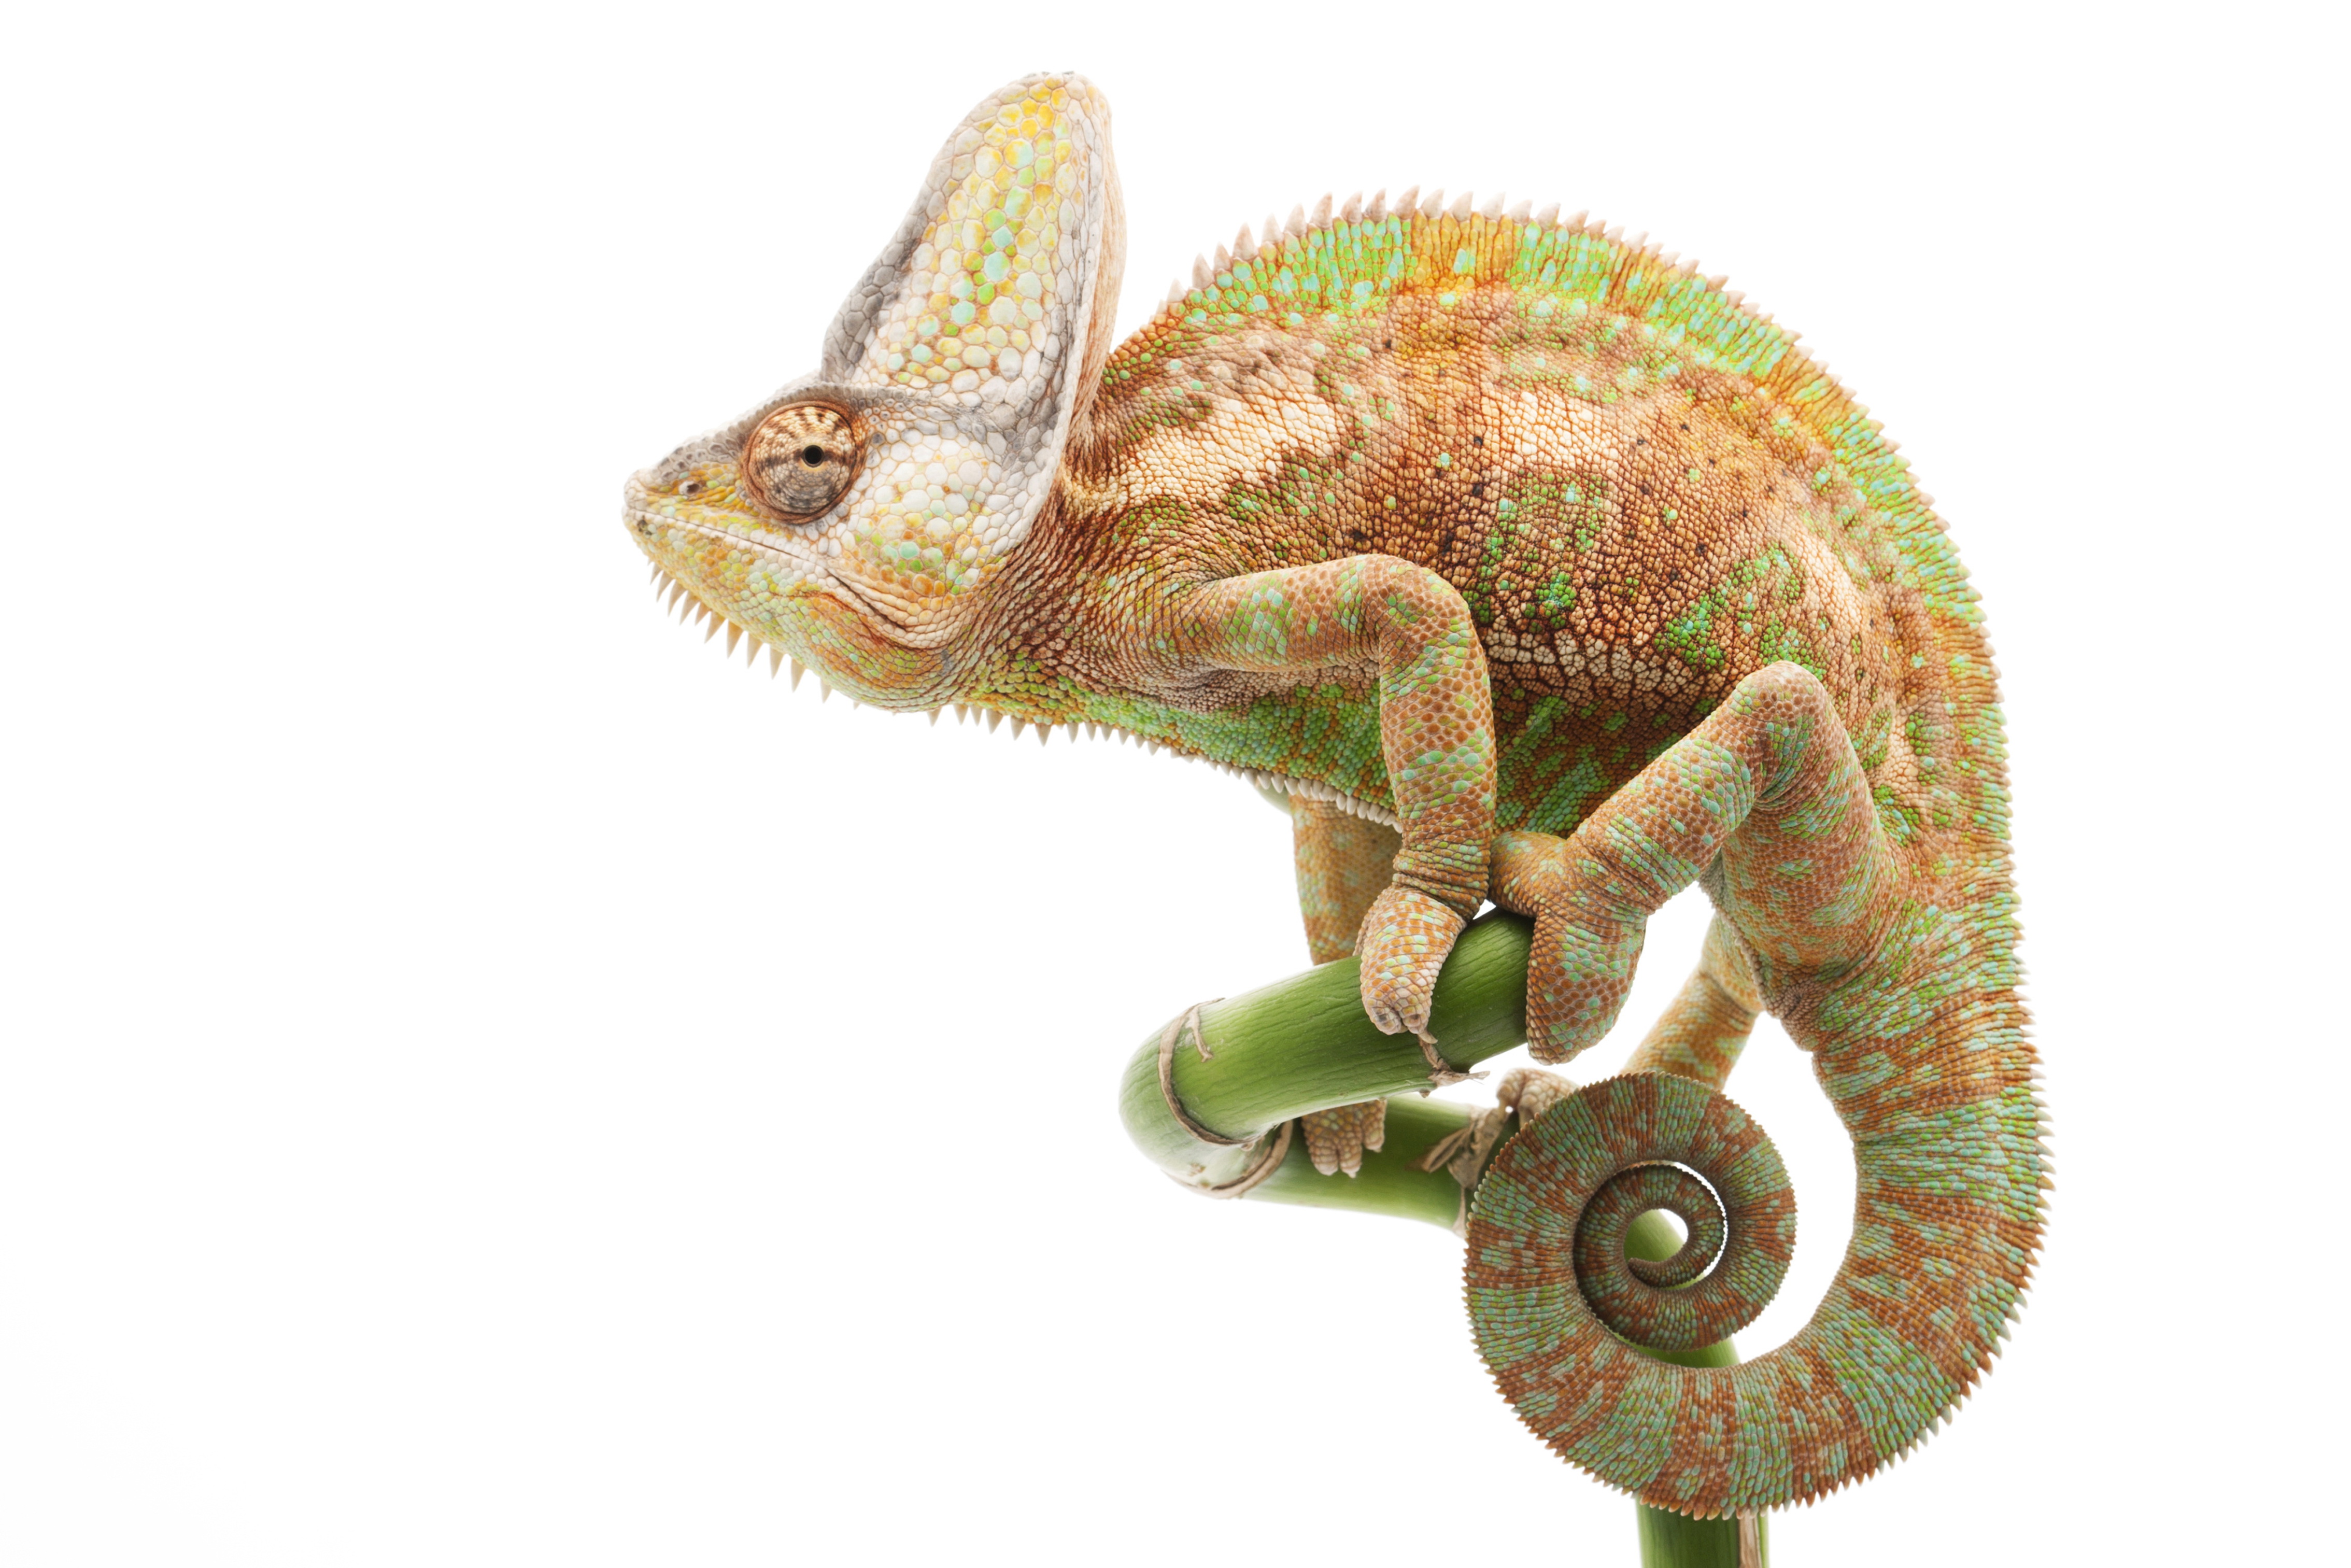 Descarga gratuita de fondo de pantalla para móvil de Camaleón, Reptiles, Animales.